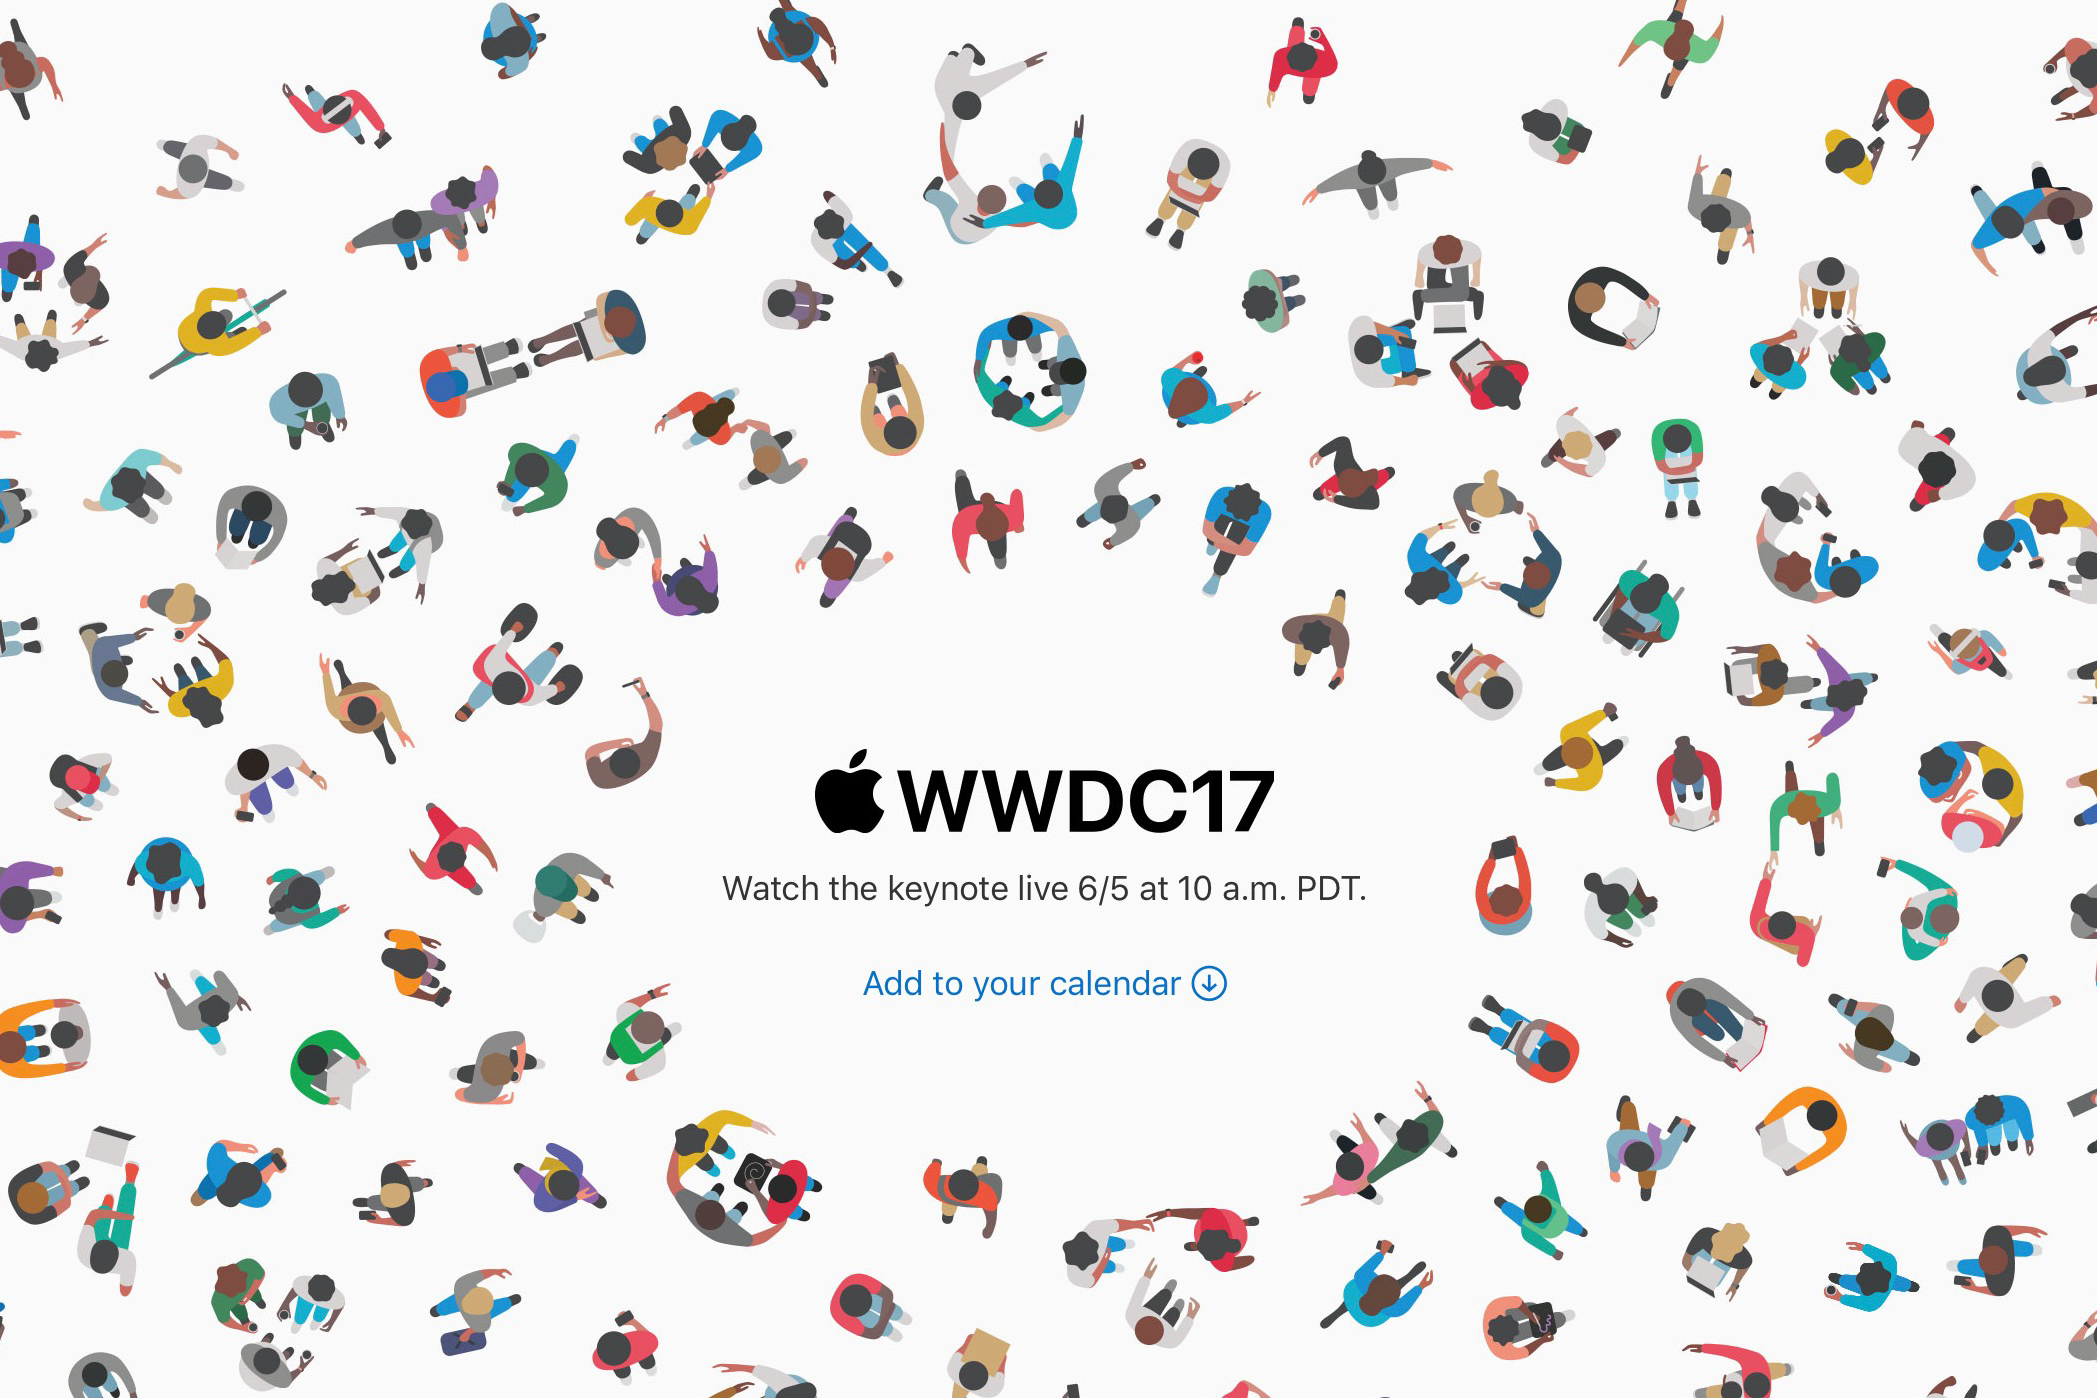 Hướng dẫn xem live sự kiện WWDC 2017 trên tất cả thiết bị